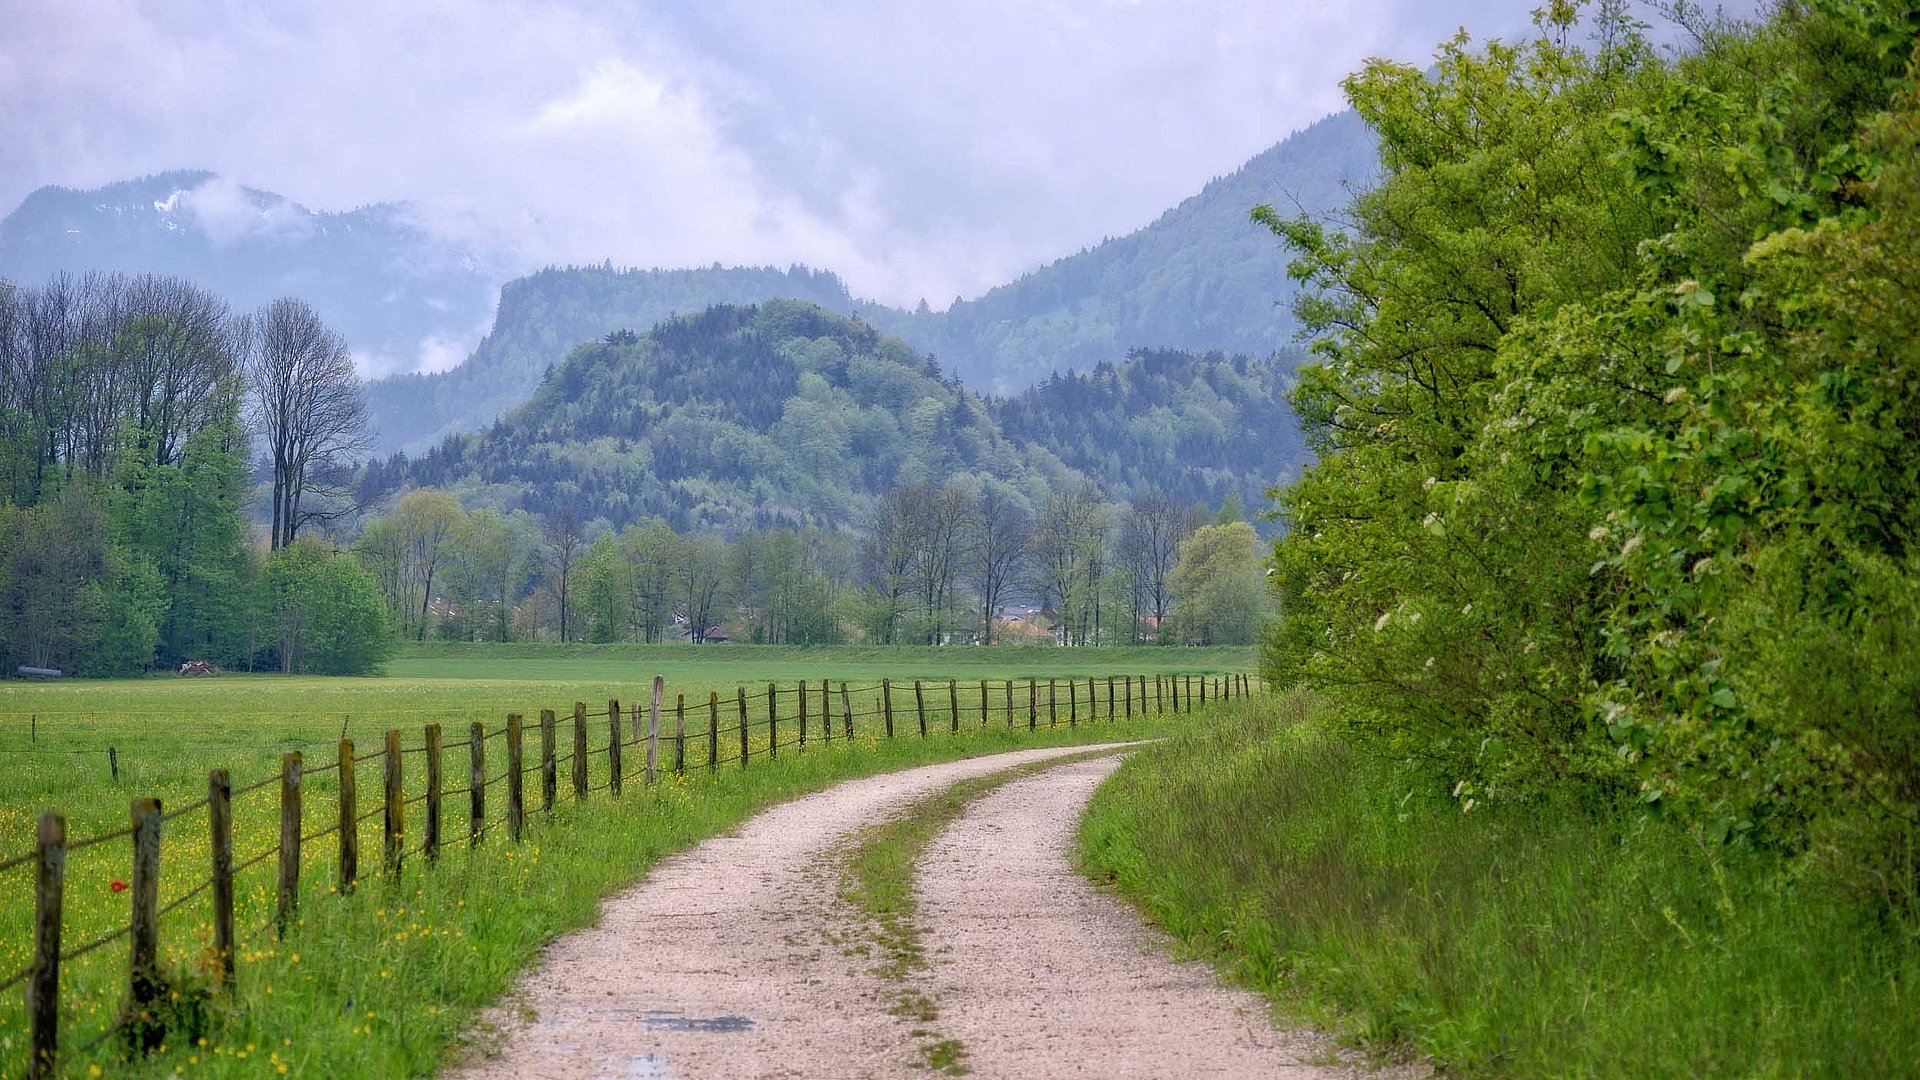 Incentives in Oberfranken - Wanderpfad in grüner Landschaft mit Hügeln und Bergen im Hintergrund